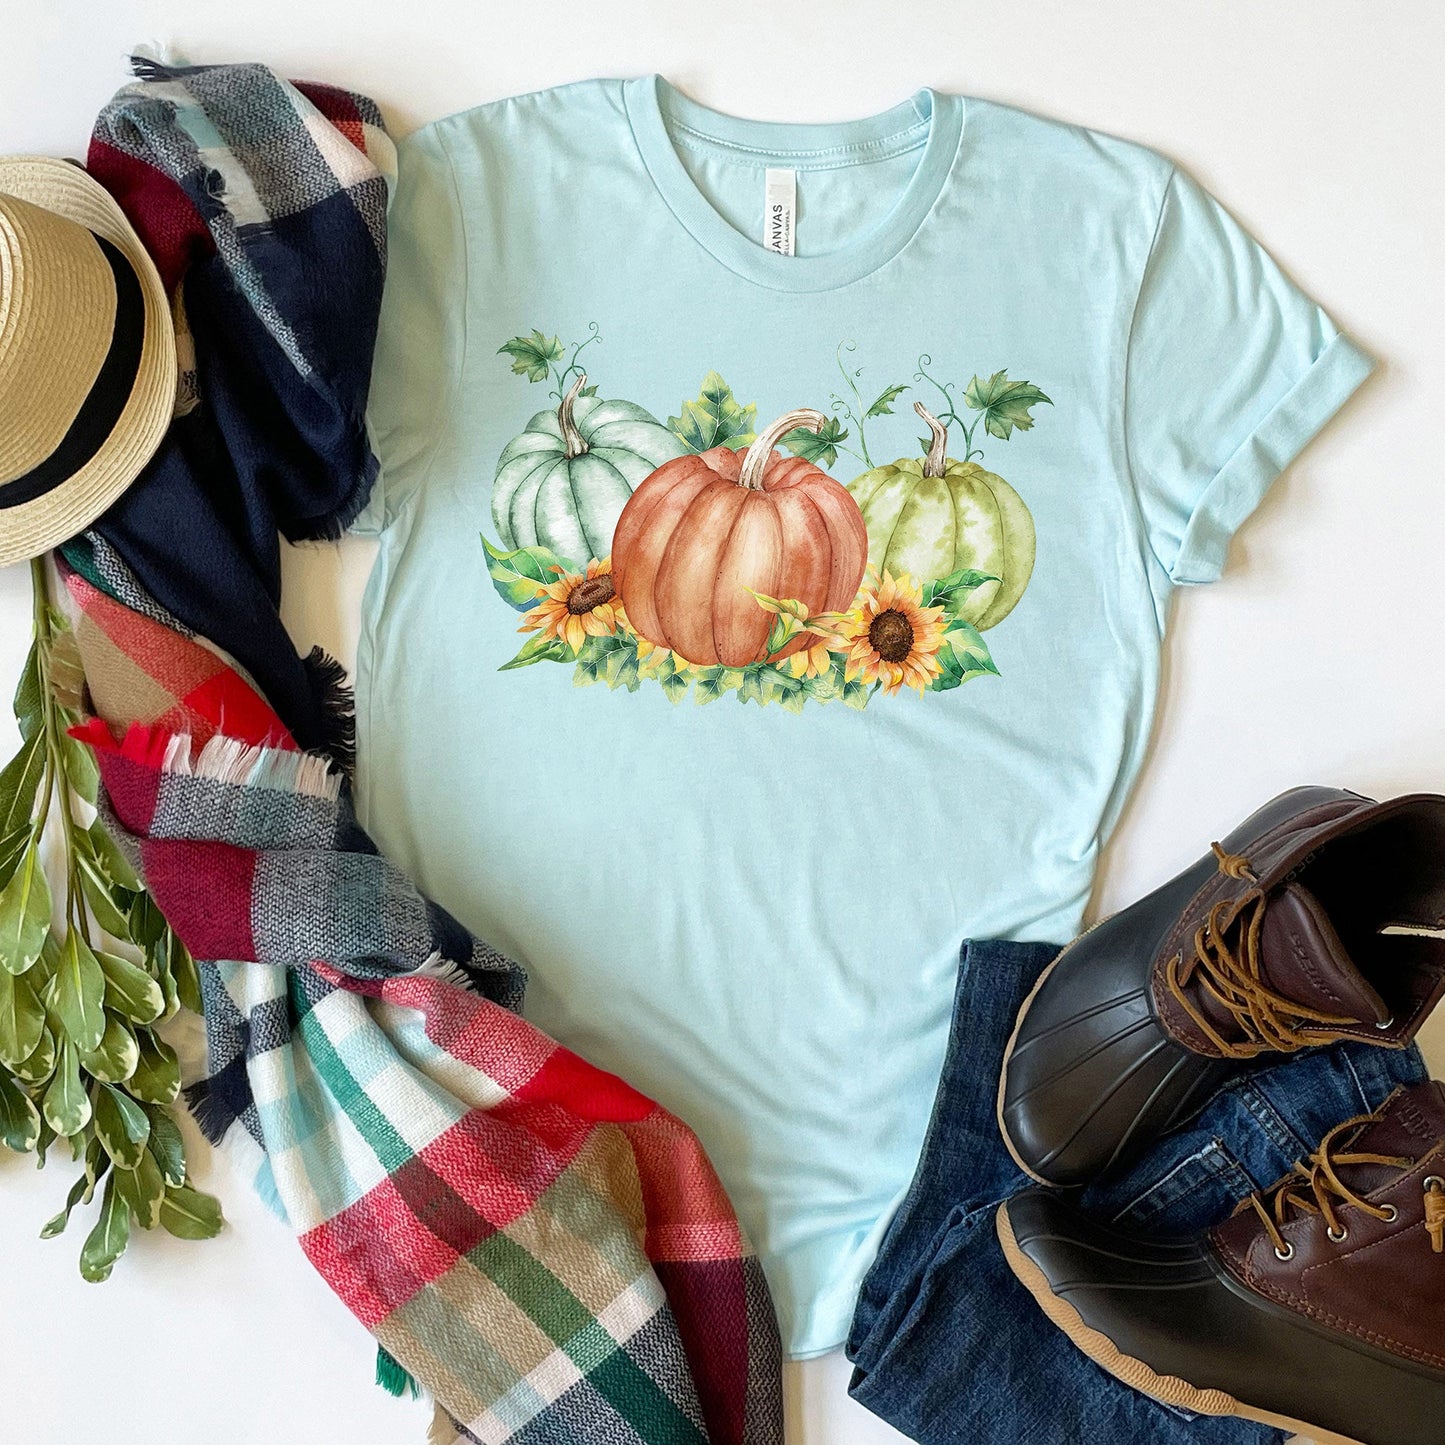 Harvest Pumpkins T-shirt, Autumn Tee